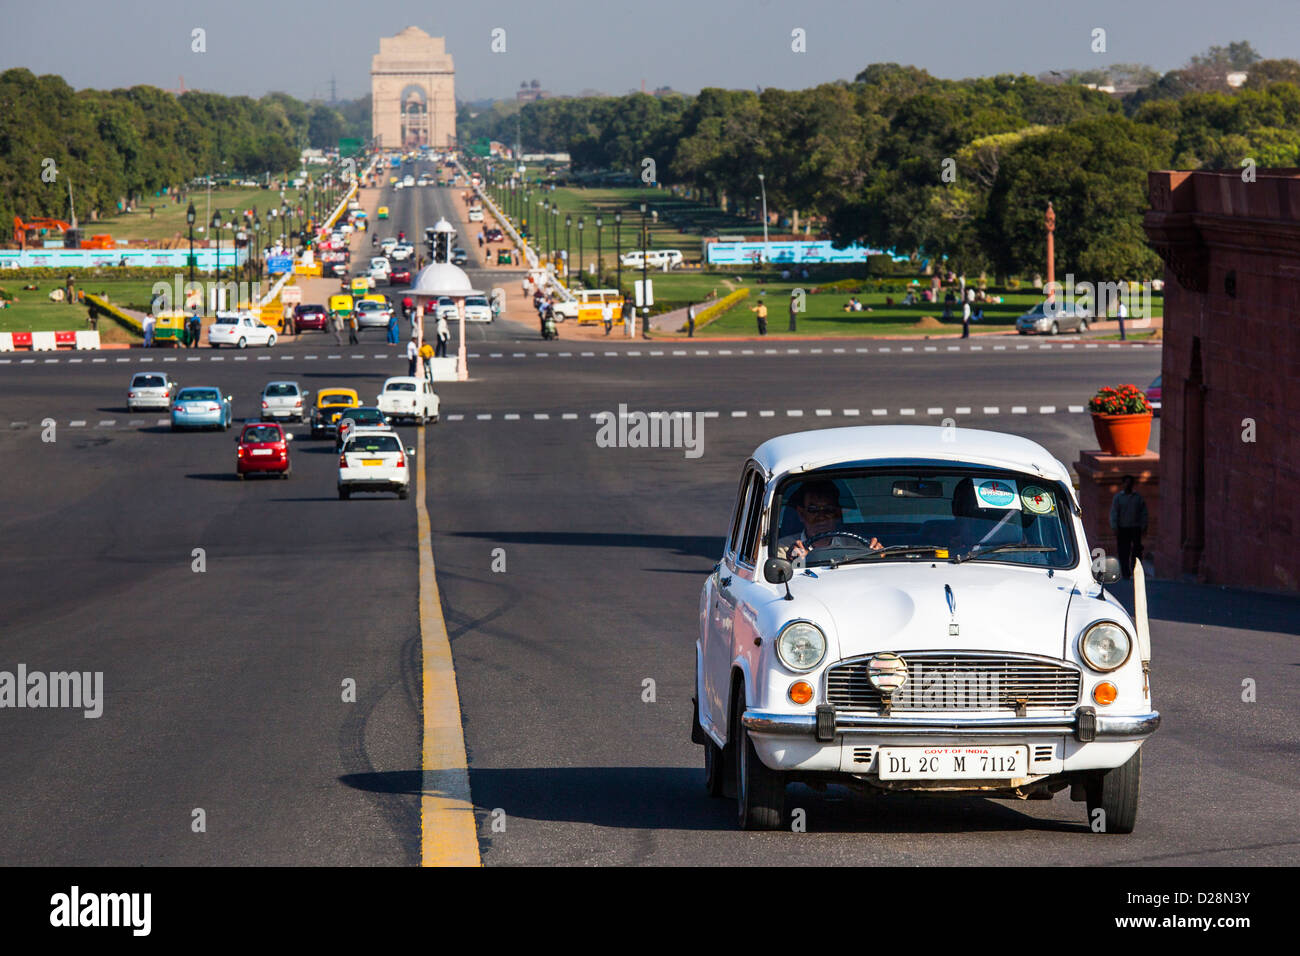 India Gate, New Delhi, India Stock Photo